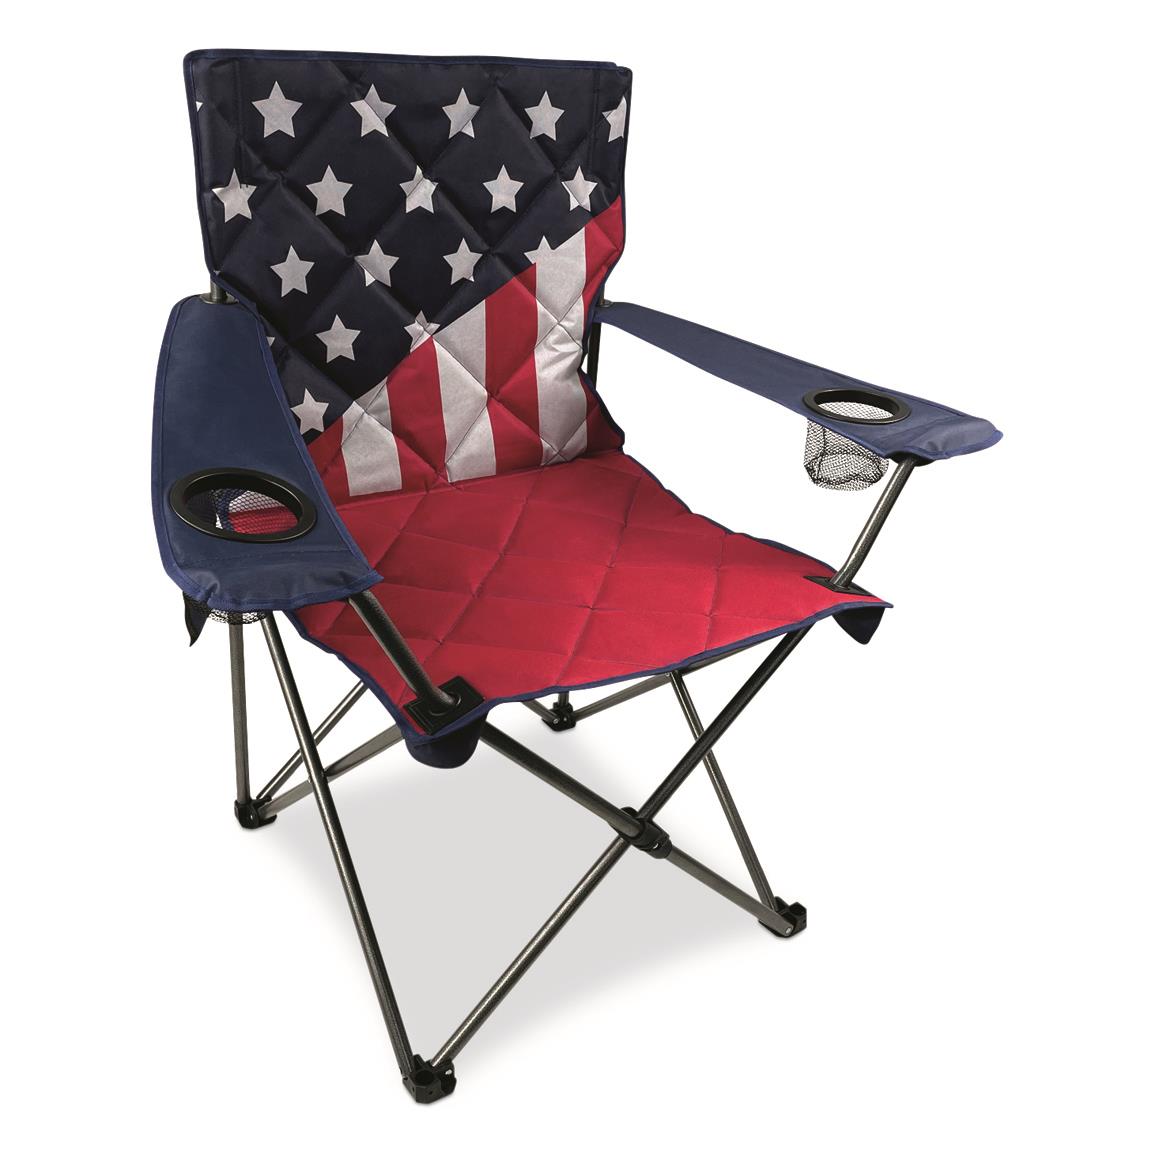 Black Sierra Equipment Oversized Old Glory Flag Chair, 300-lb. Capacity, Red/White/Blue